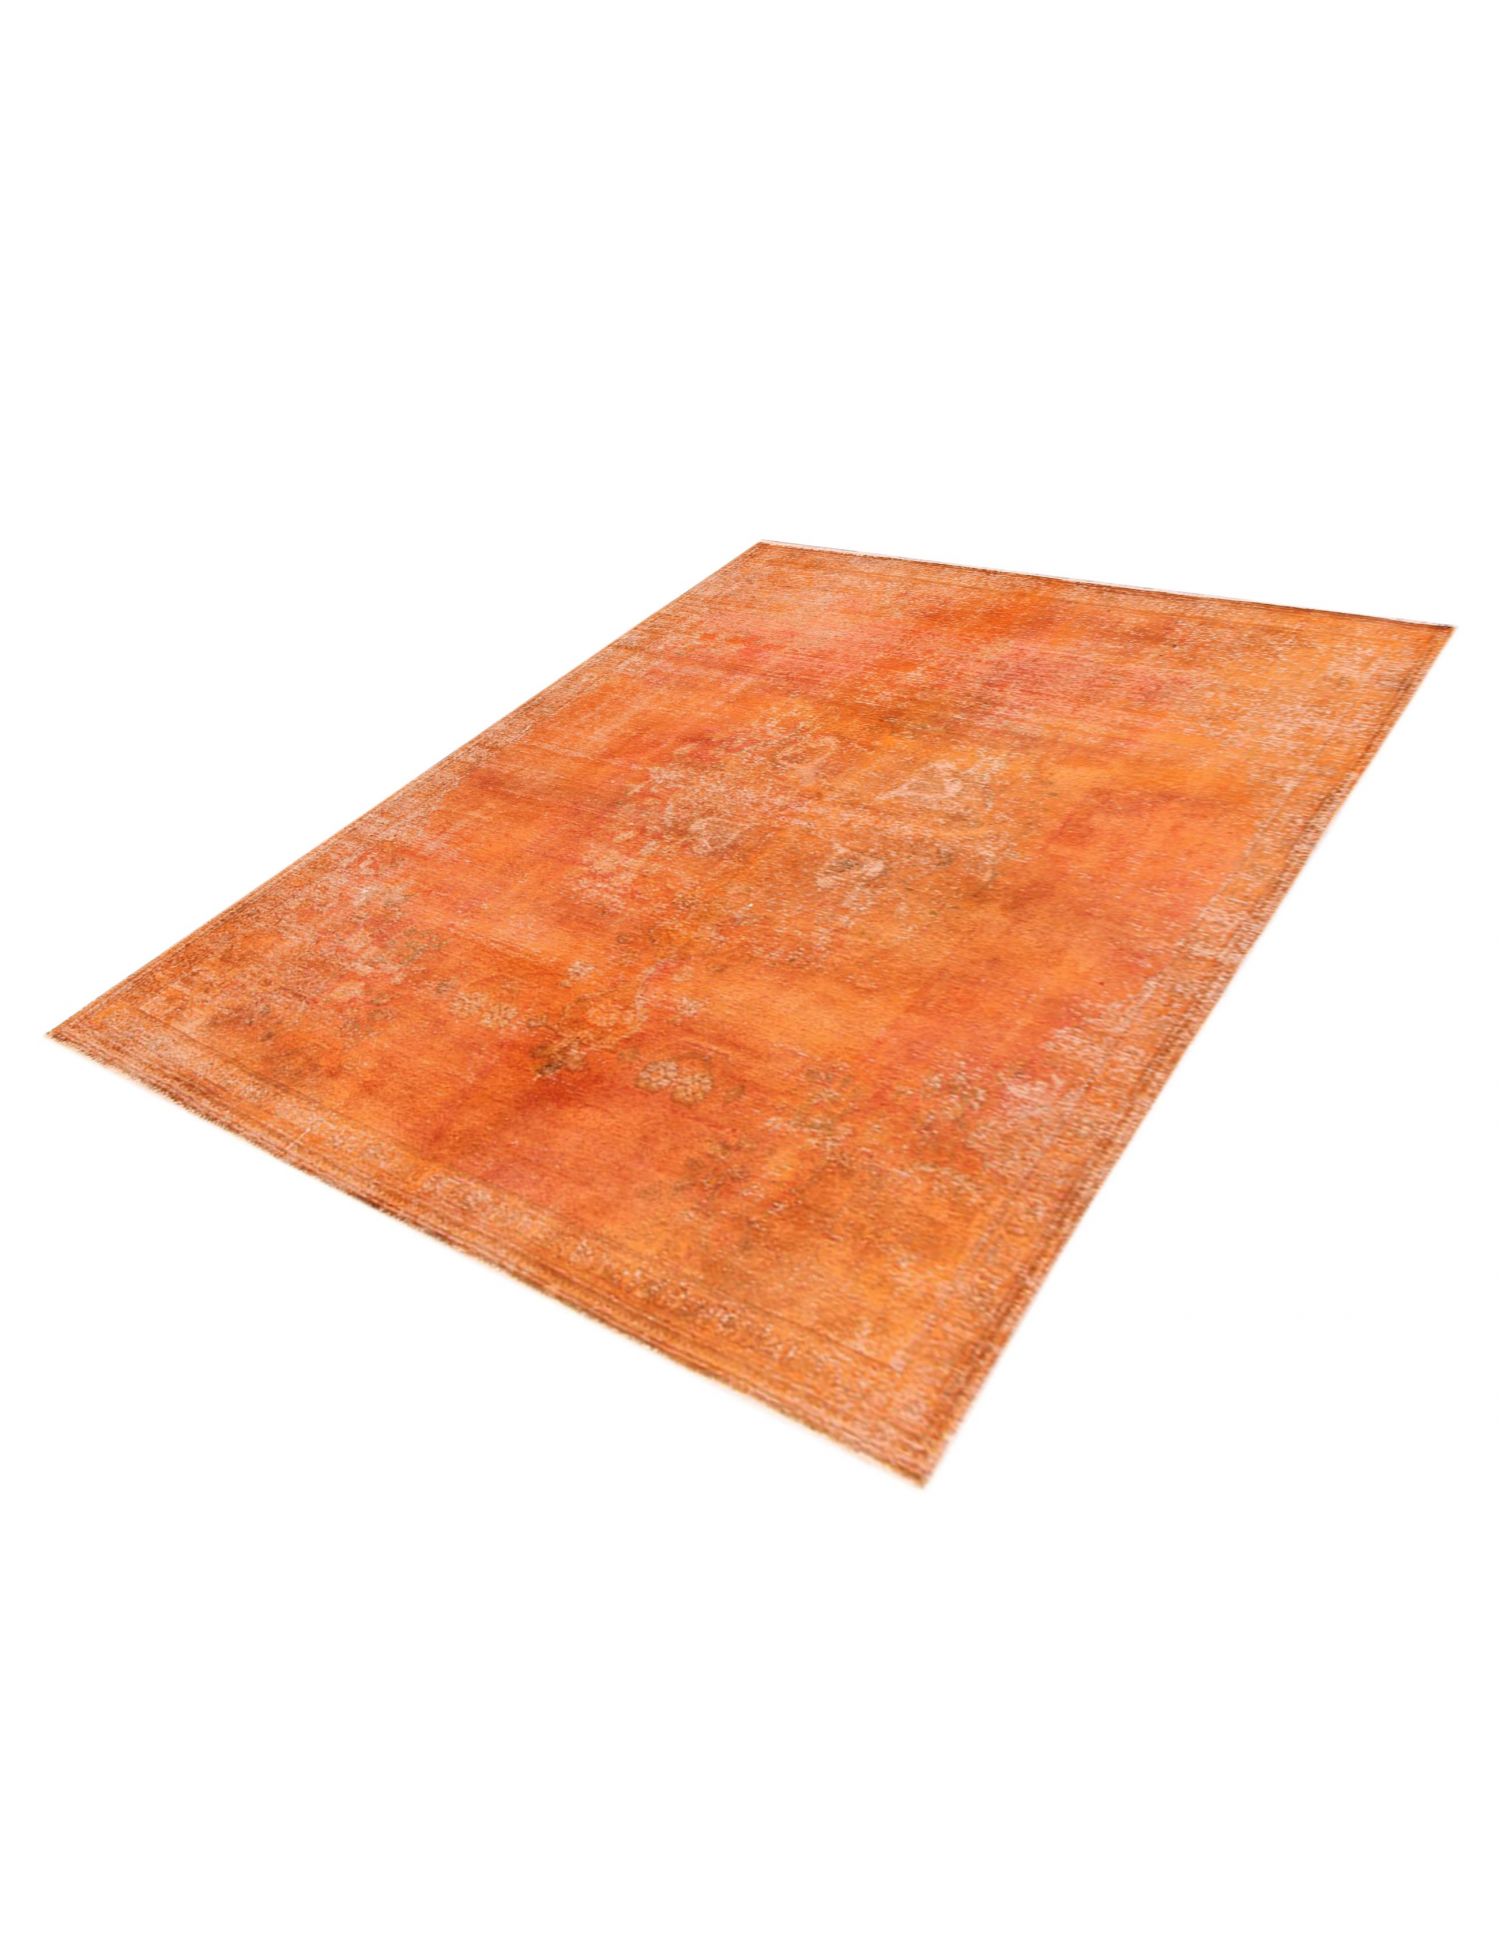 Persischer Vintage Teppich  orange <br/>260 x 200 cm